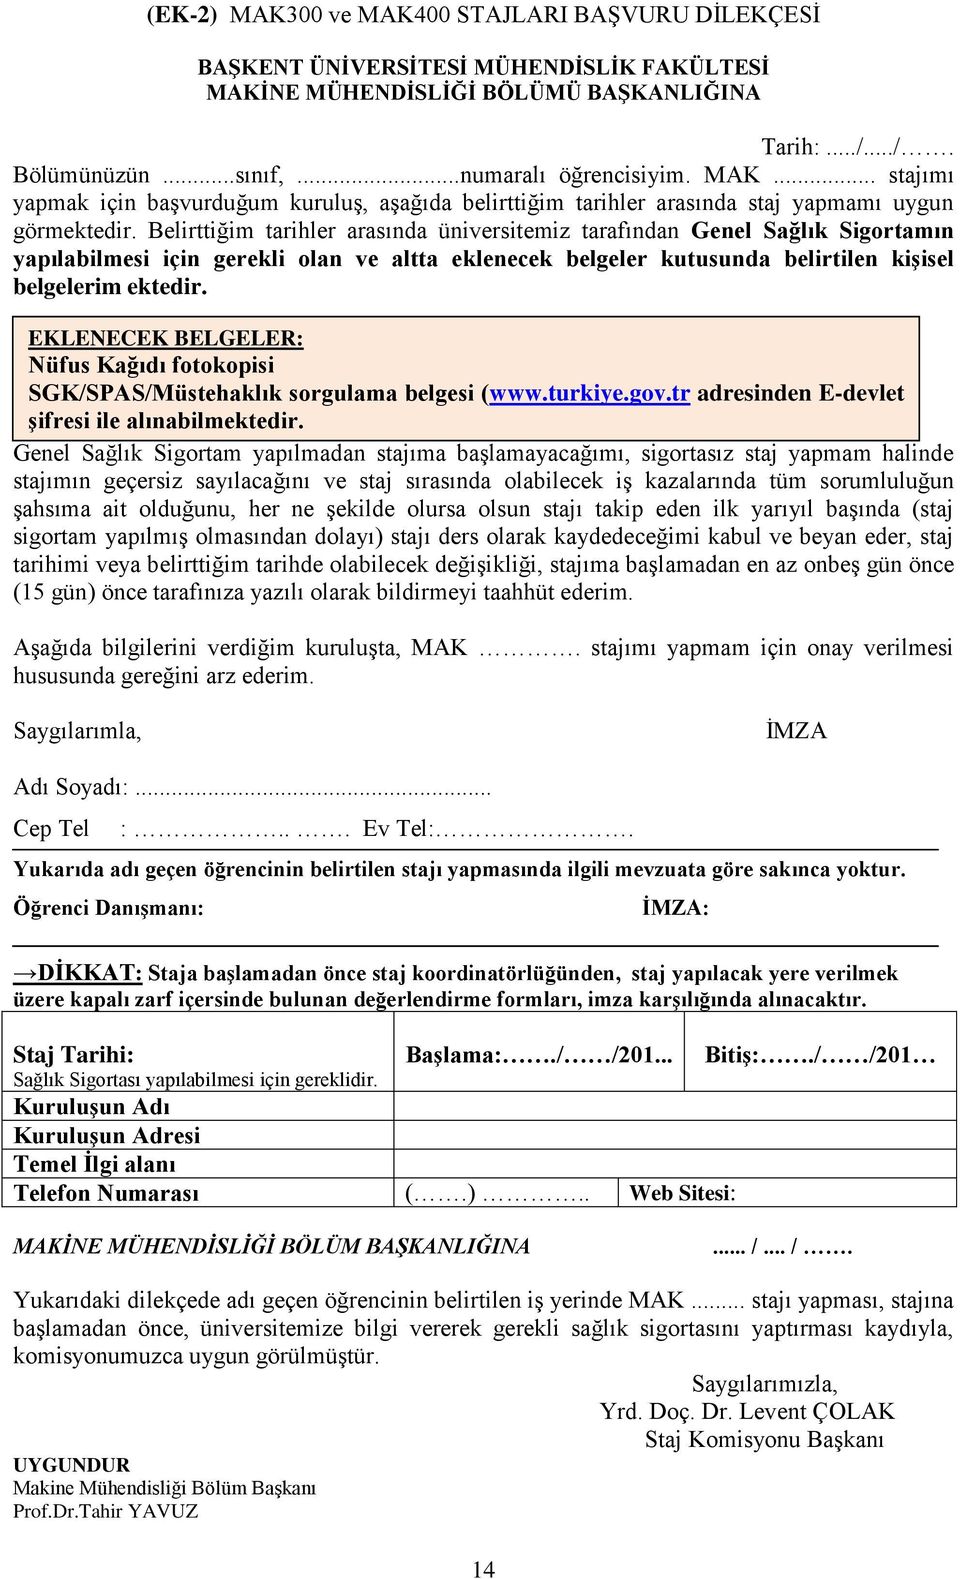 EKLENECEK BELGELER: Nüfus Kağıdı fotokopisi SGK/SPAS/Müstehaklık sorgulama belgesi (www.turkiye.gov.tr adresinden E-devlet şifresi ile alınabilmektedir.